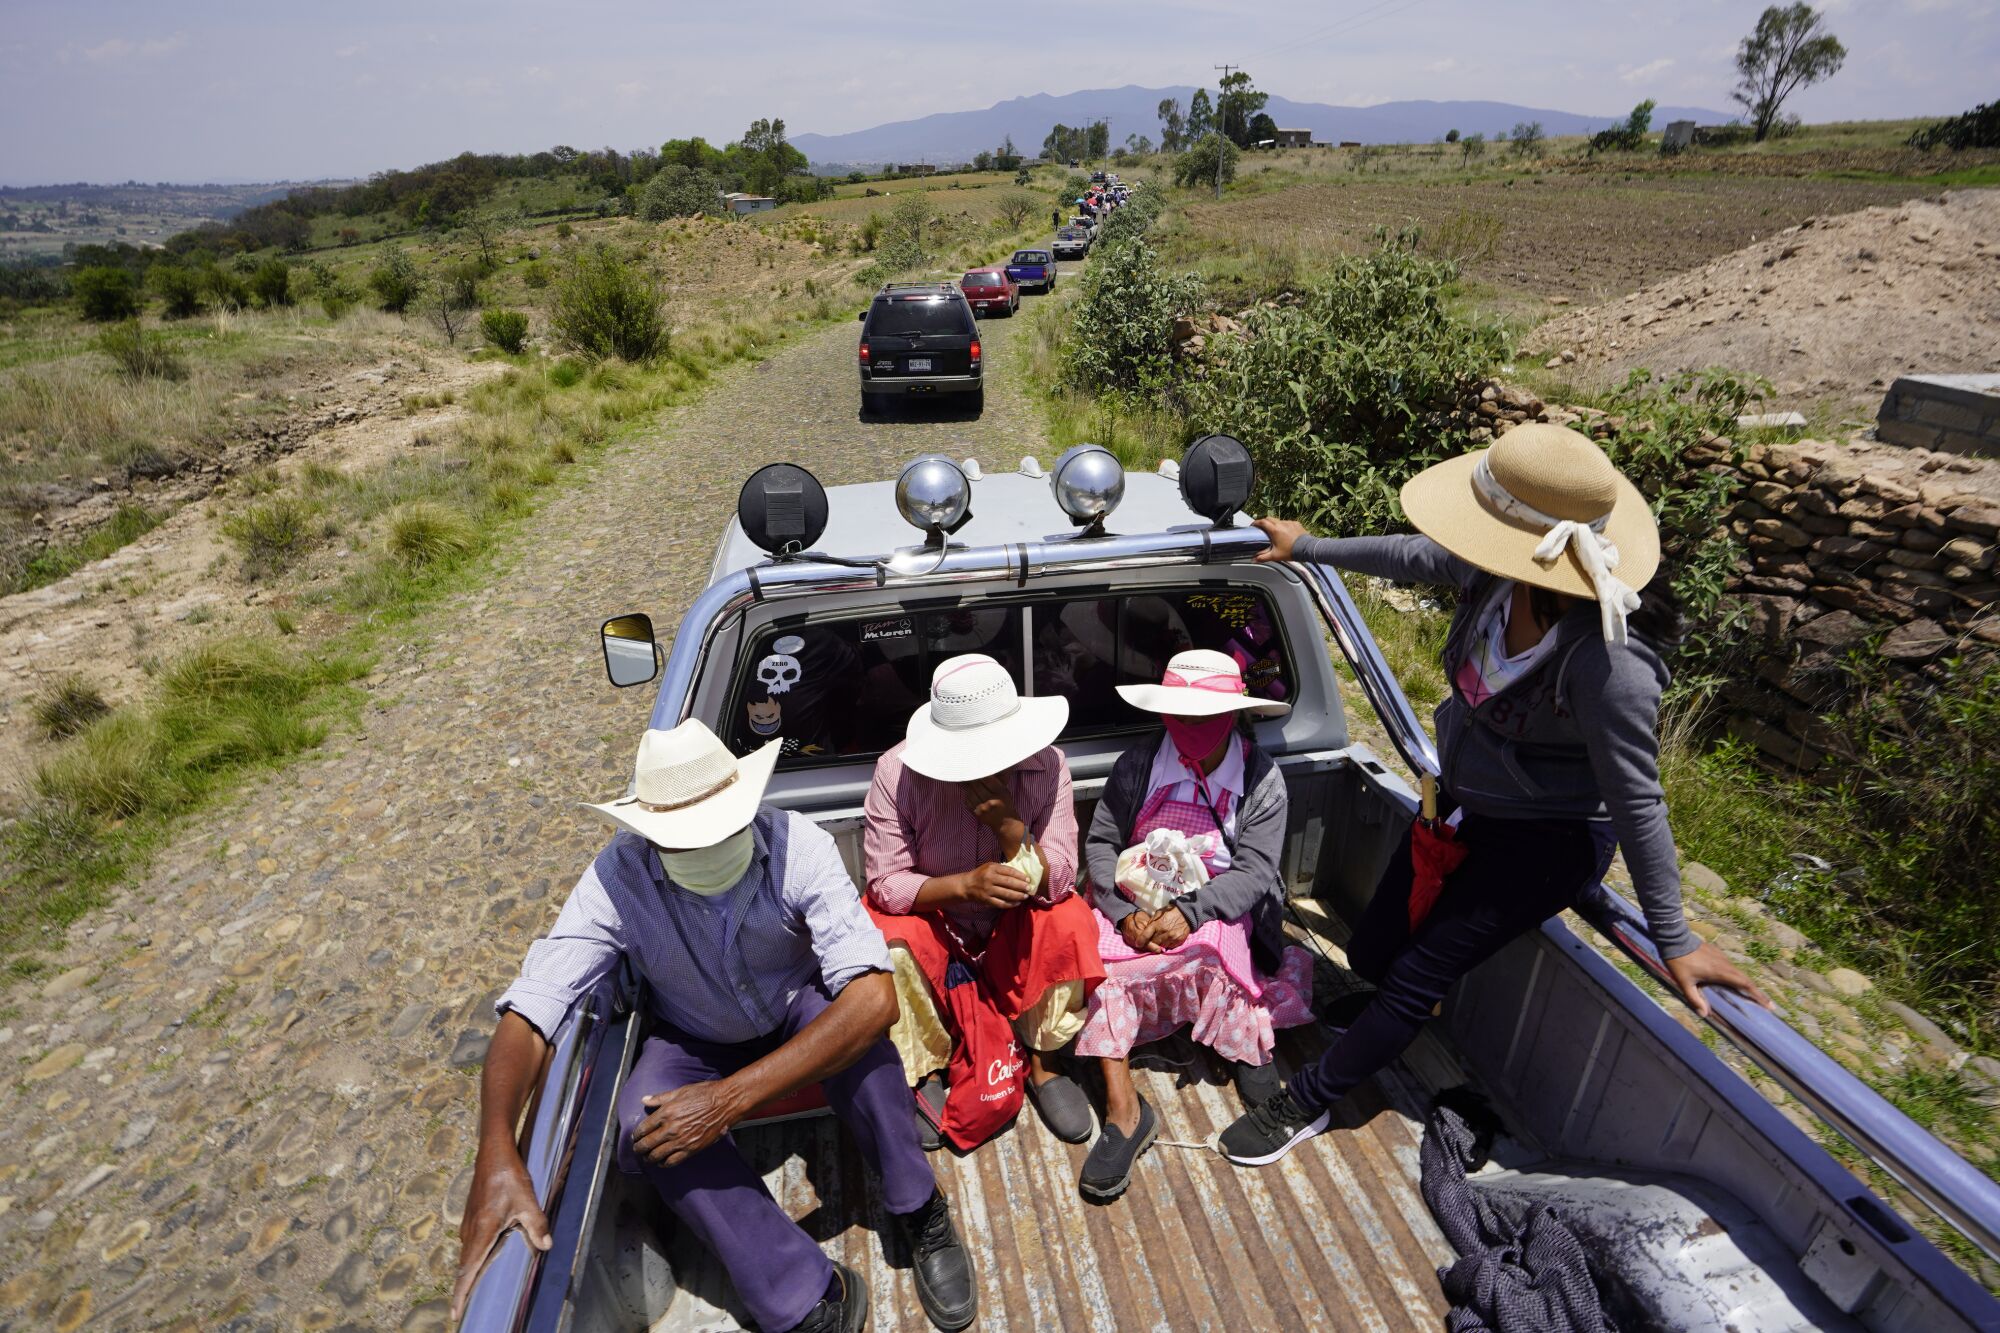 Familiares van en la parte trasera de una camioneta hacia el cementerio de El Rincón de San Ildefonso